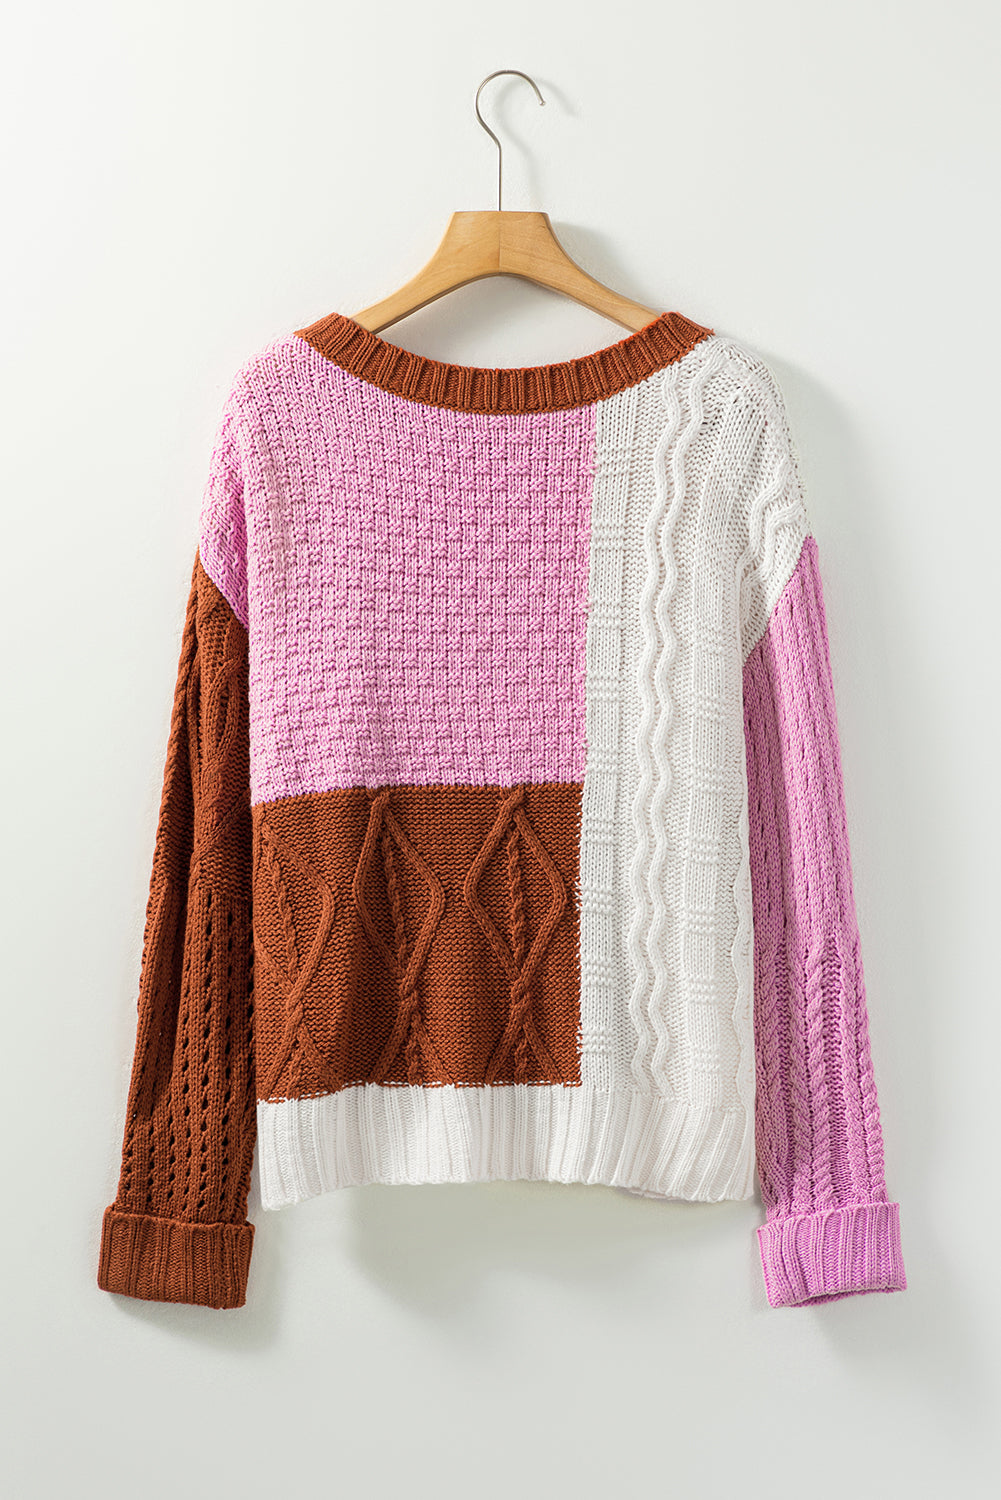 Pull en tricot multicolore à textures mélangées et blocs de couleurs